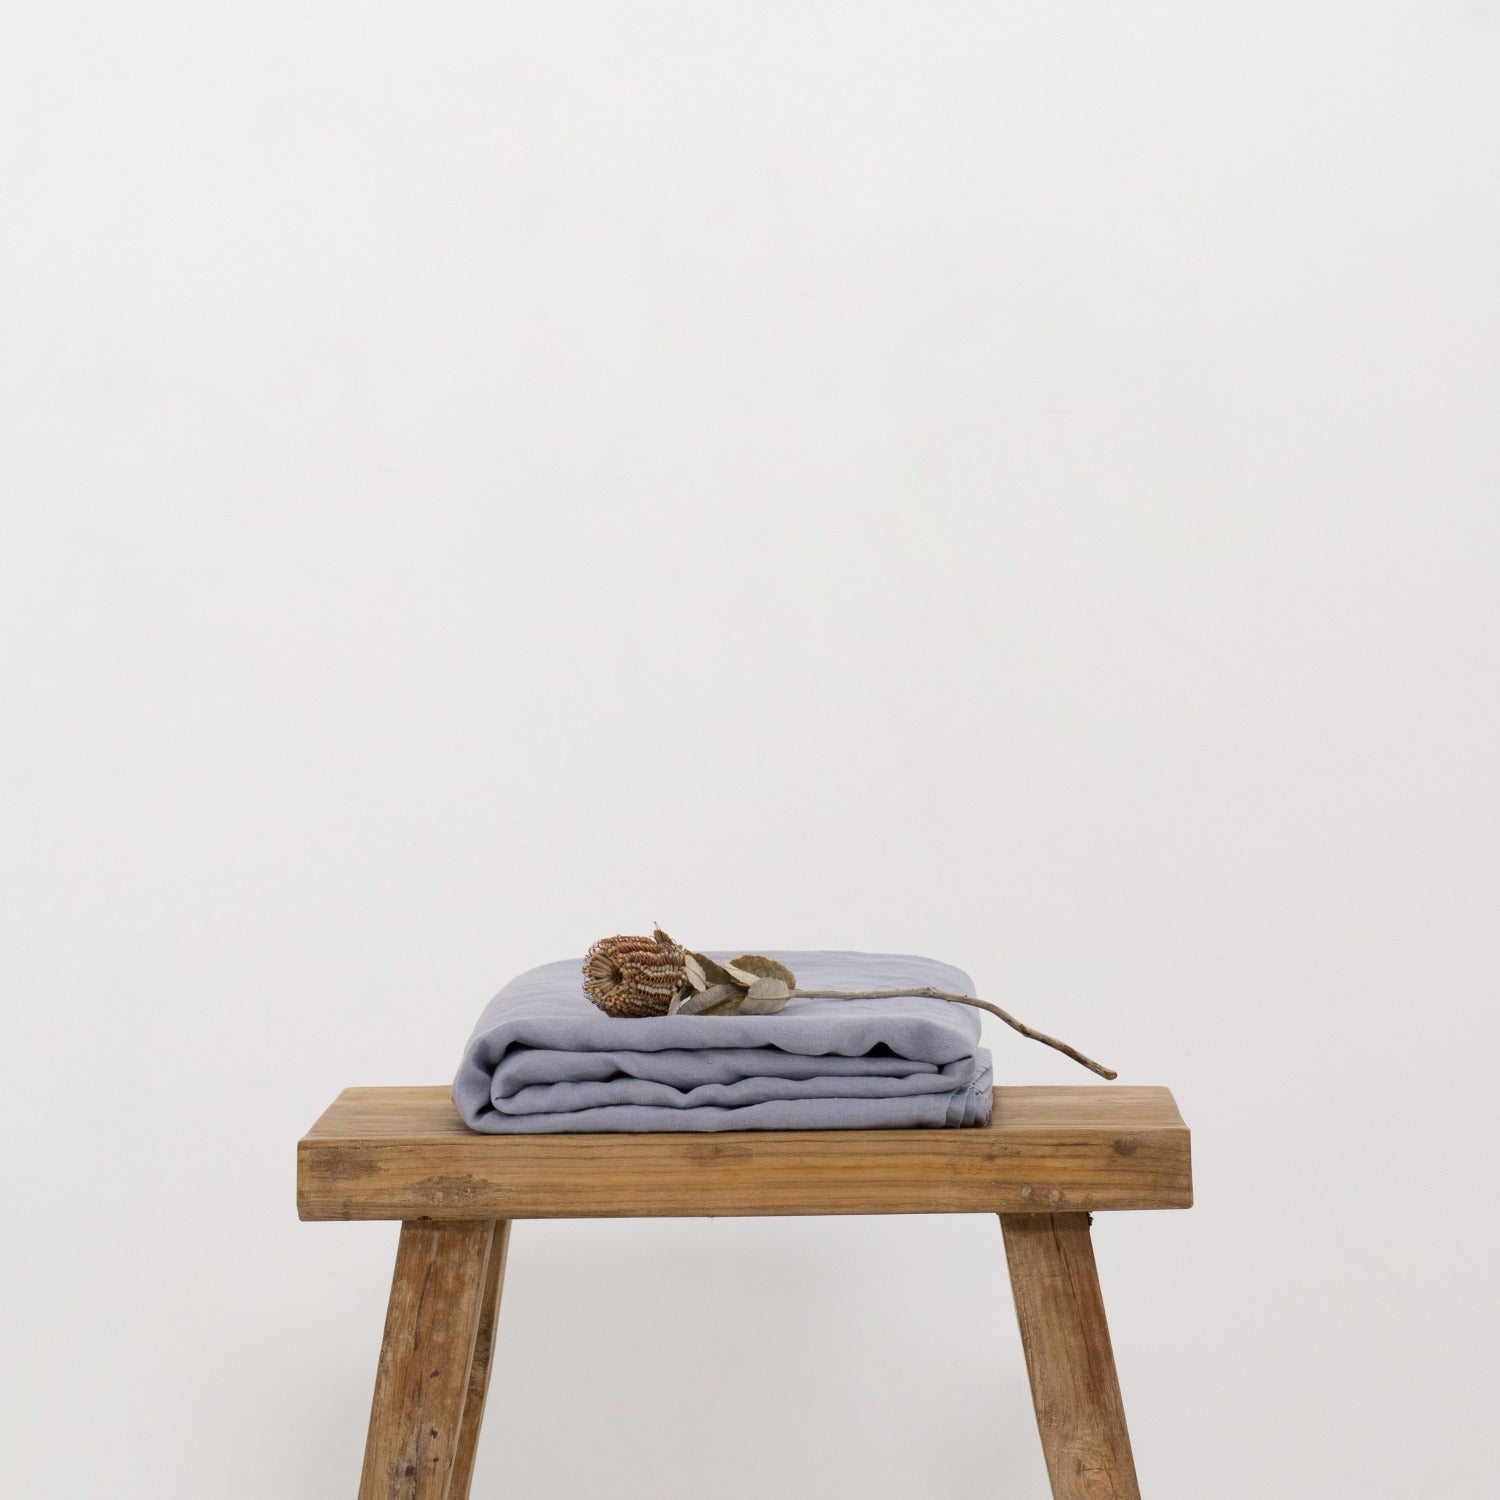 Siguenza Serenity Hemp Sheet - Handmade Comfort Flat Sheet